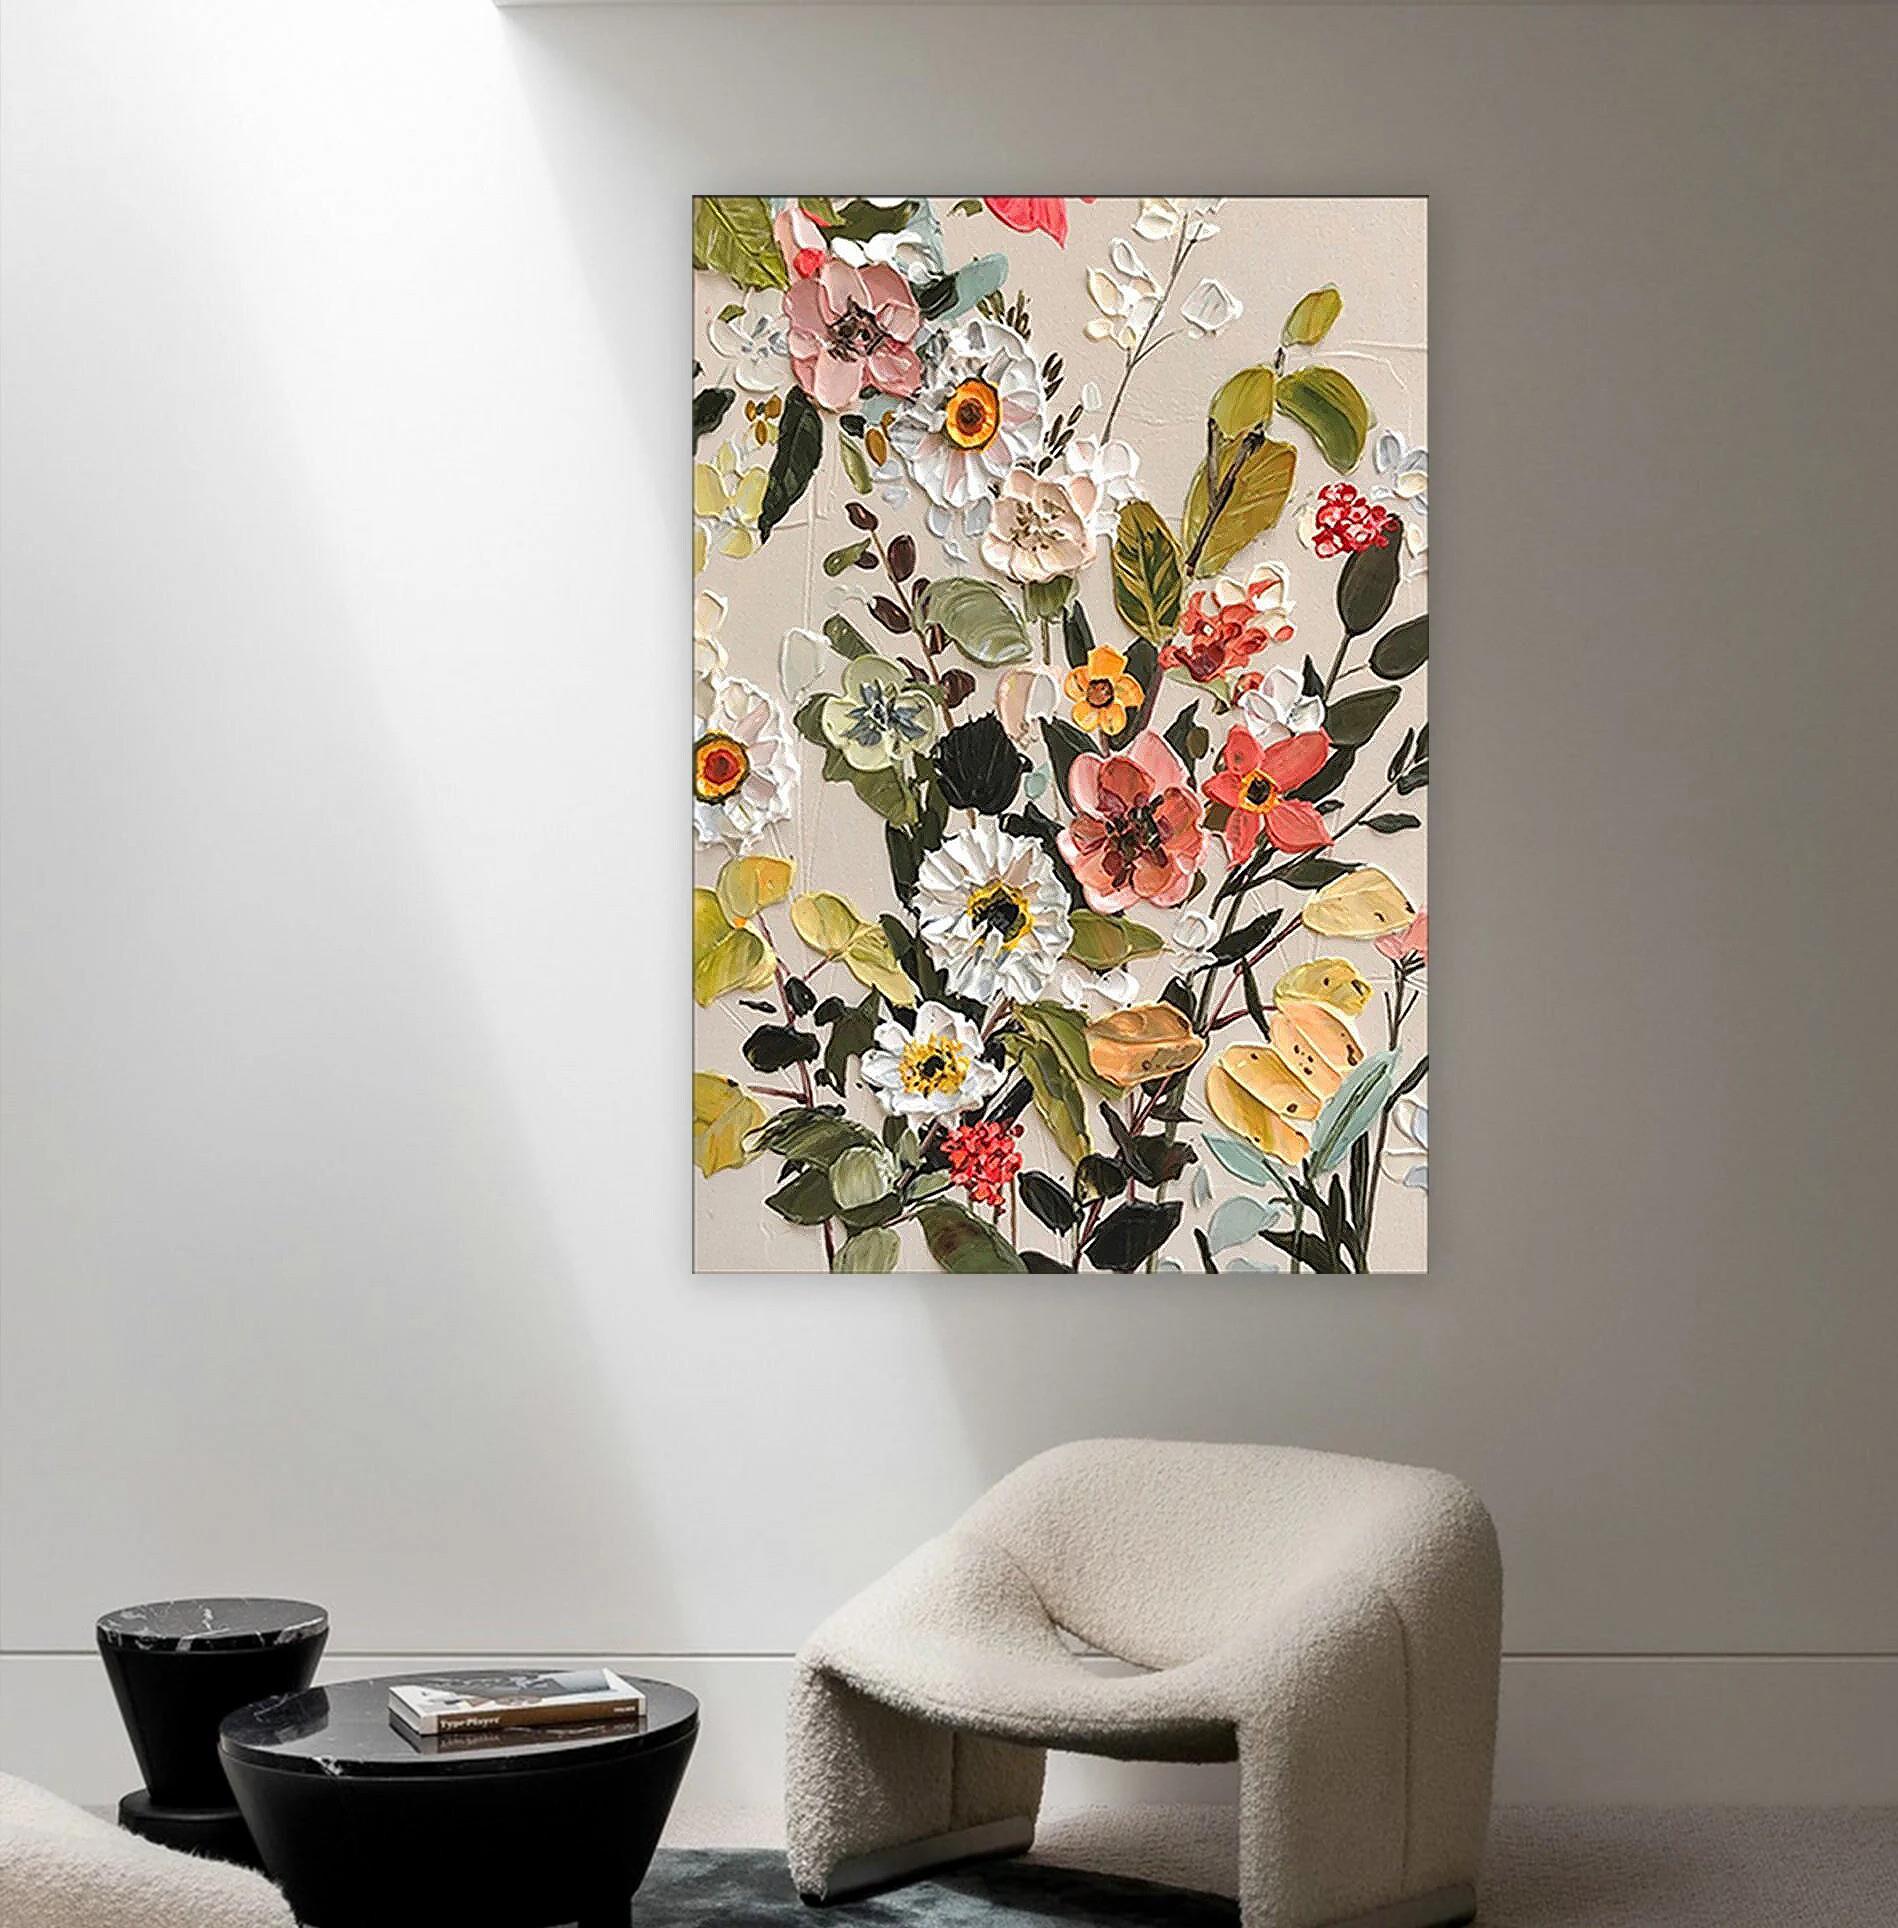 パレット ナイフの壁の装飾テクスチャによる抽象的な咲く花油絵